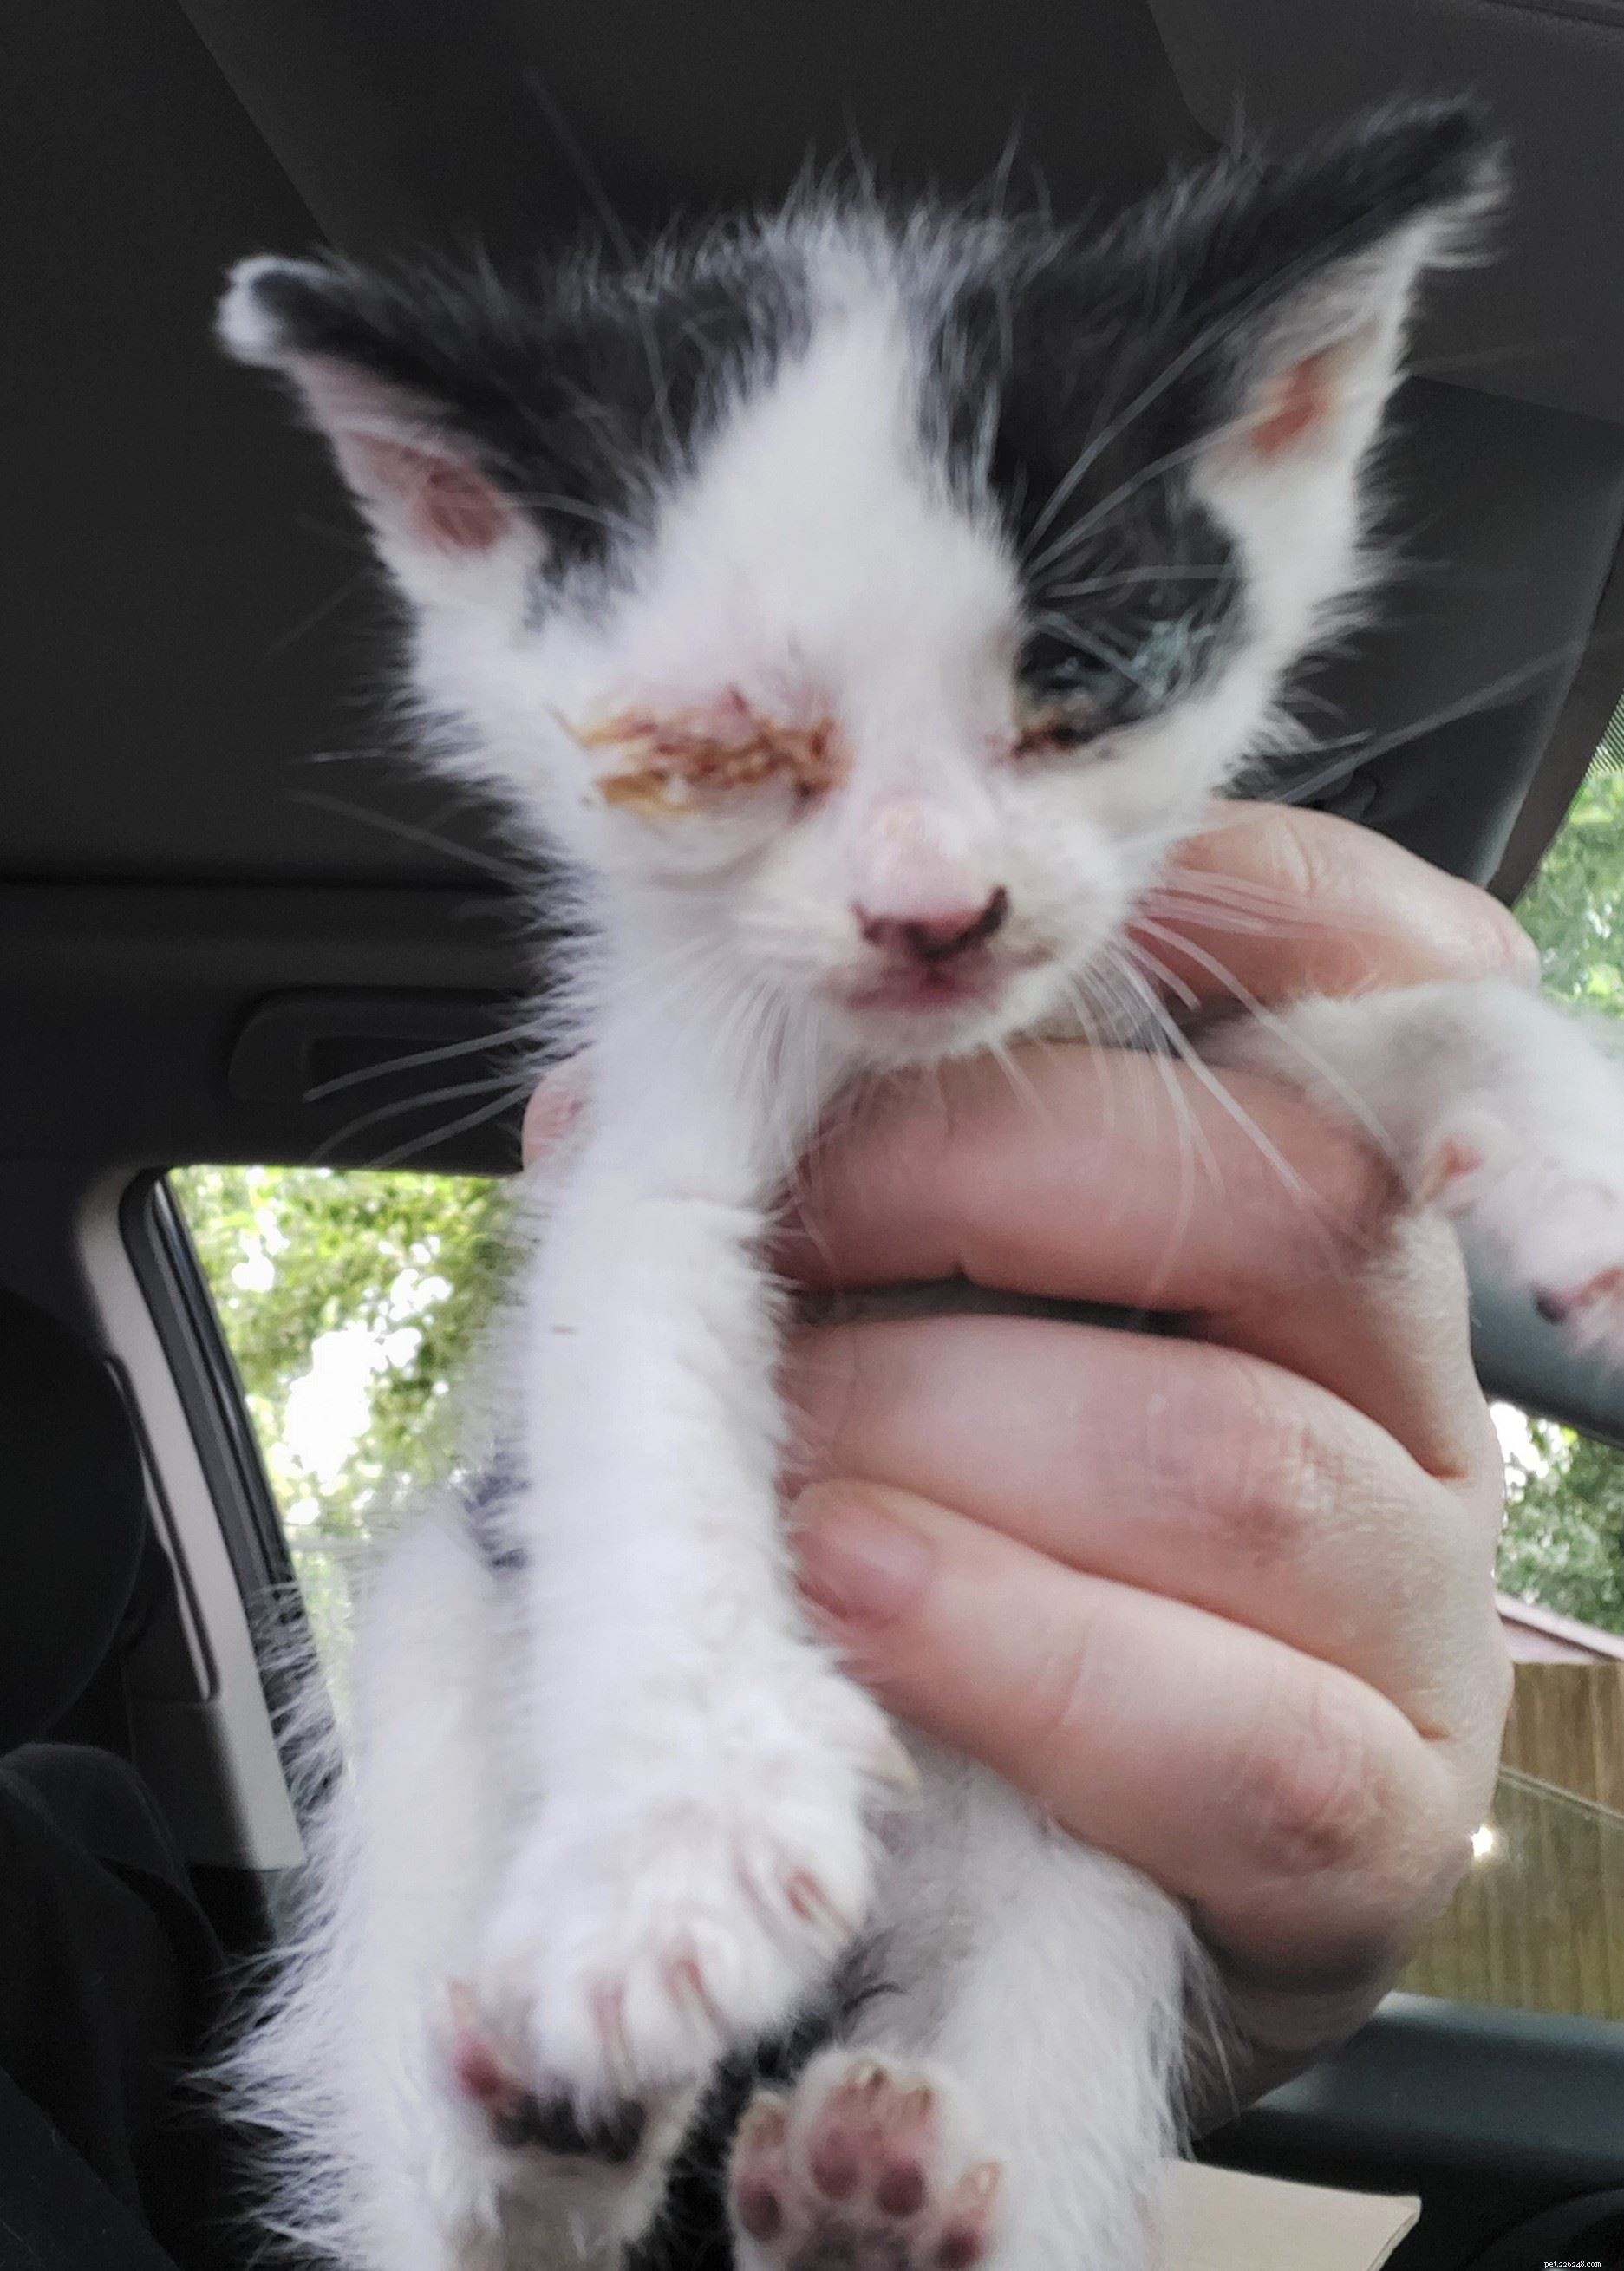 Hrozně dehydratované kotě bylo zachráněno z teplot při pečení po téměř týdenním cestování z Rumunska do Spojeného království